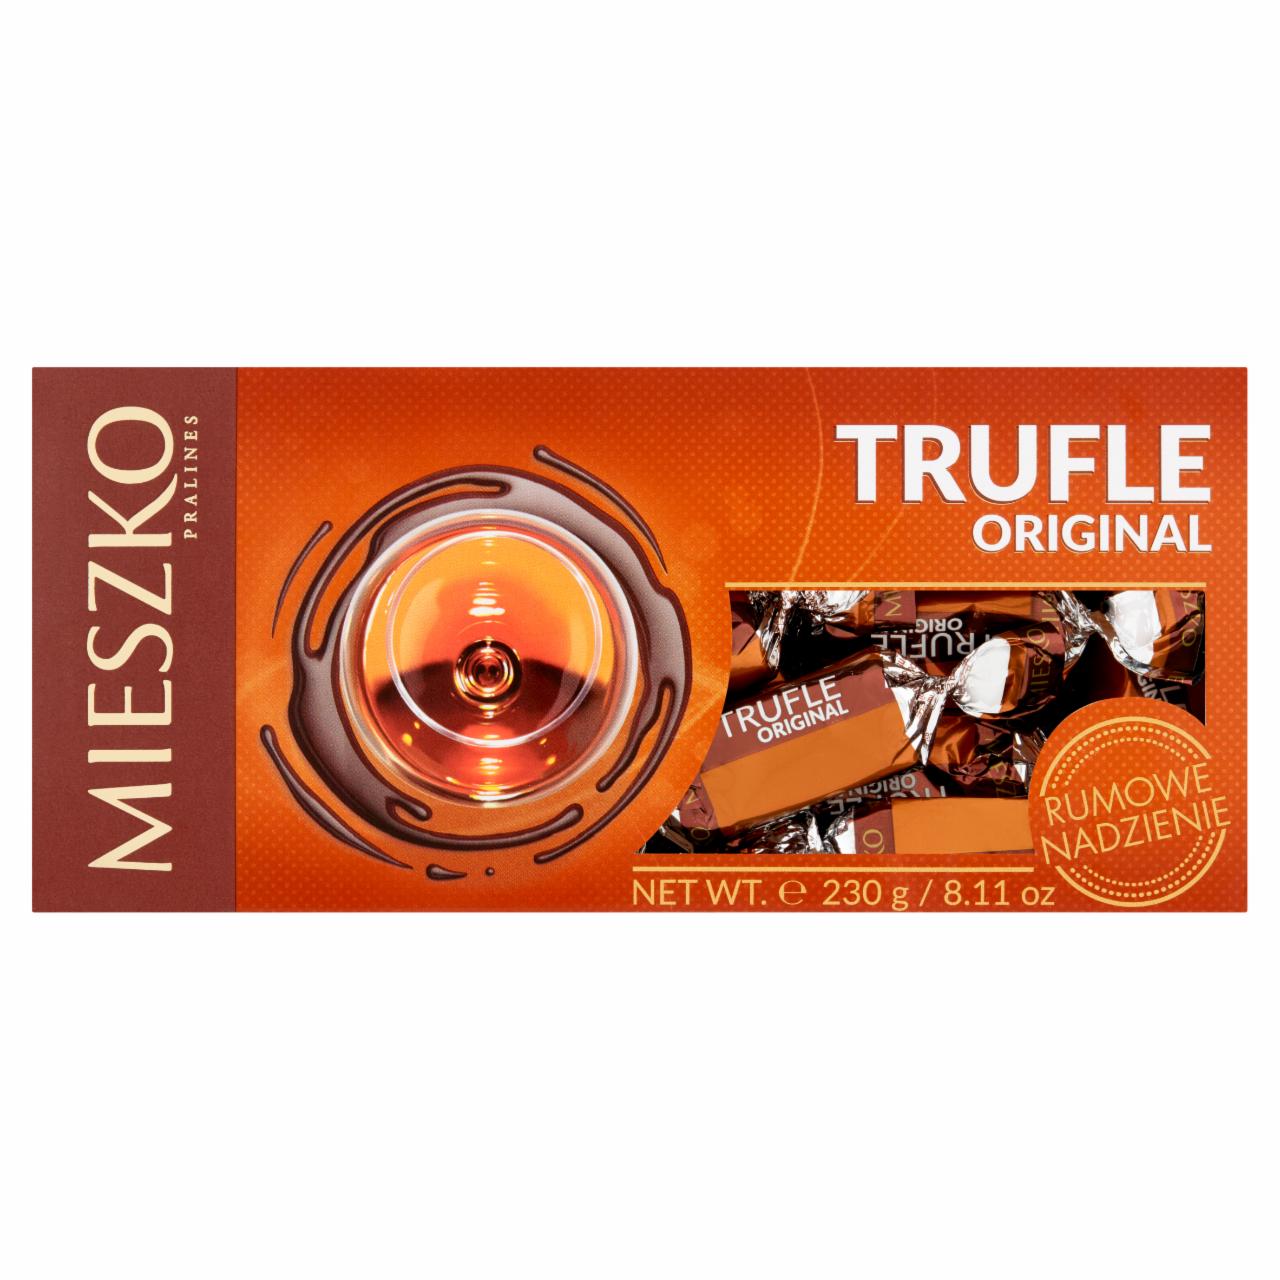 Fotografie - Trufle original czekoladowa słodycz + kakaowe nadzienie z nutką rumu Mieszko